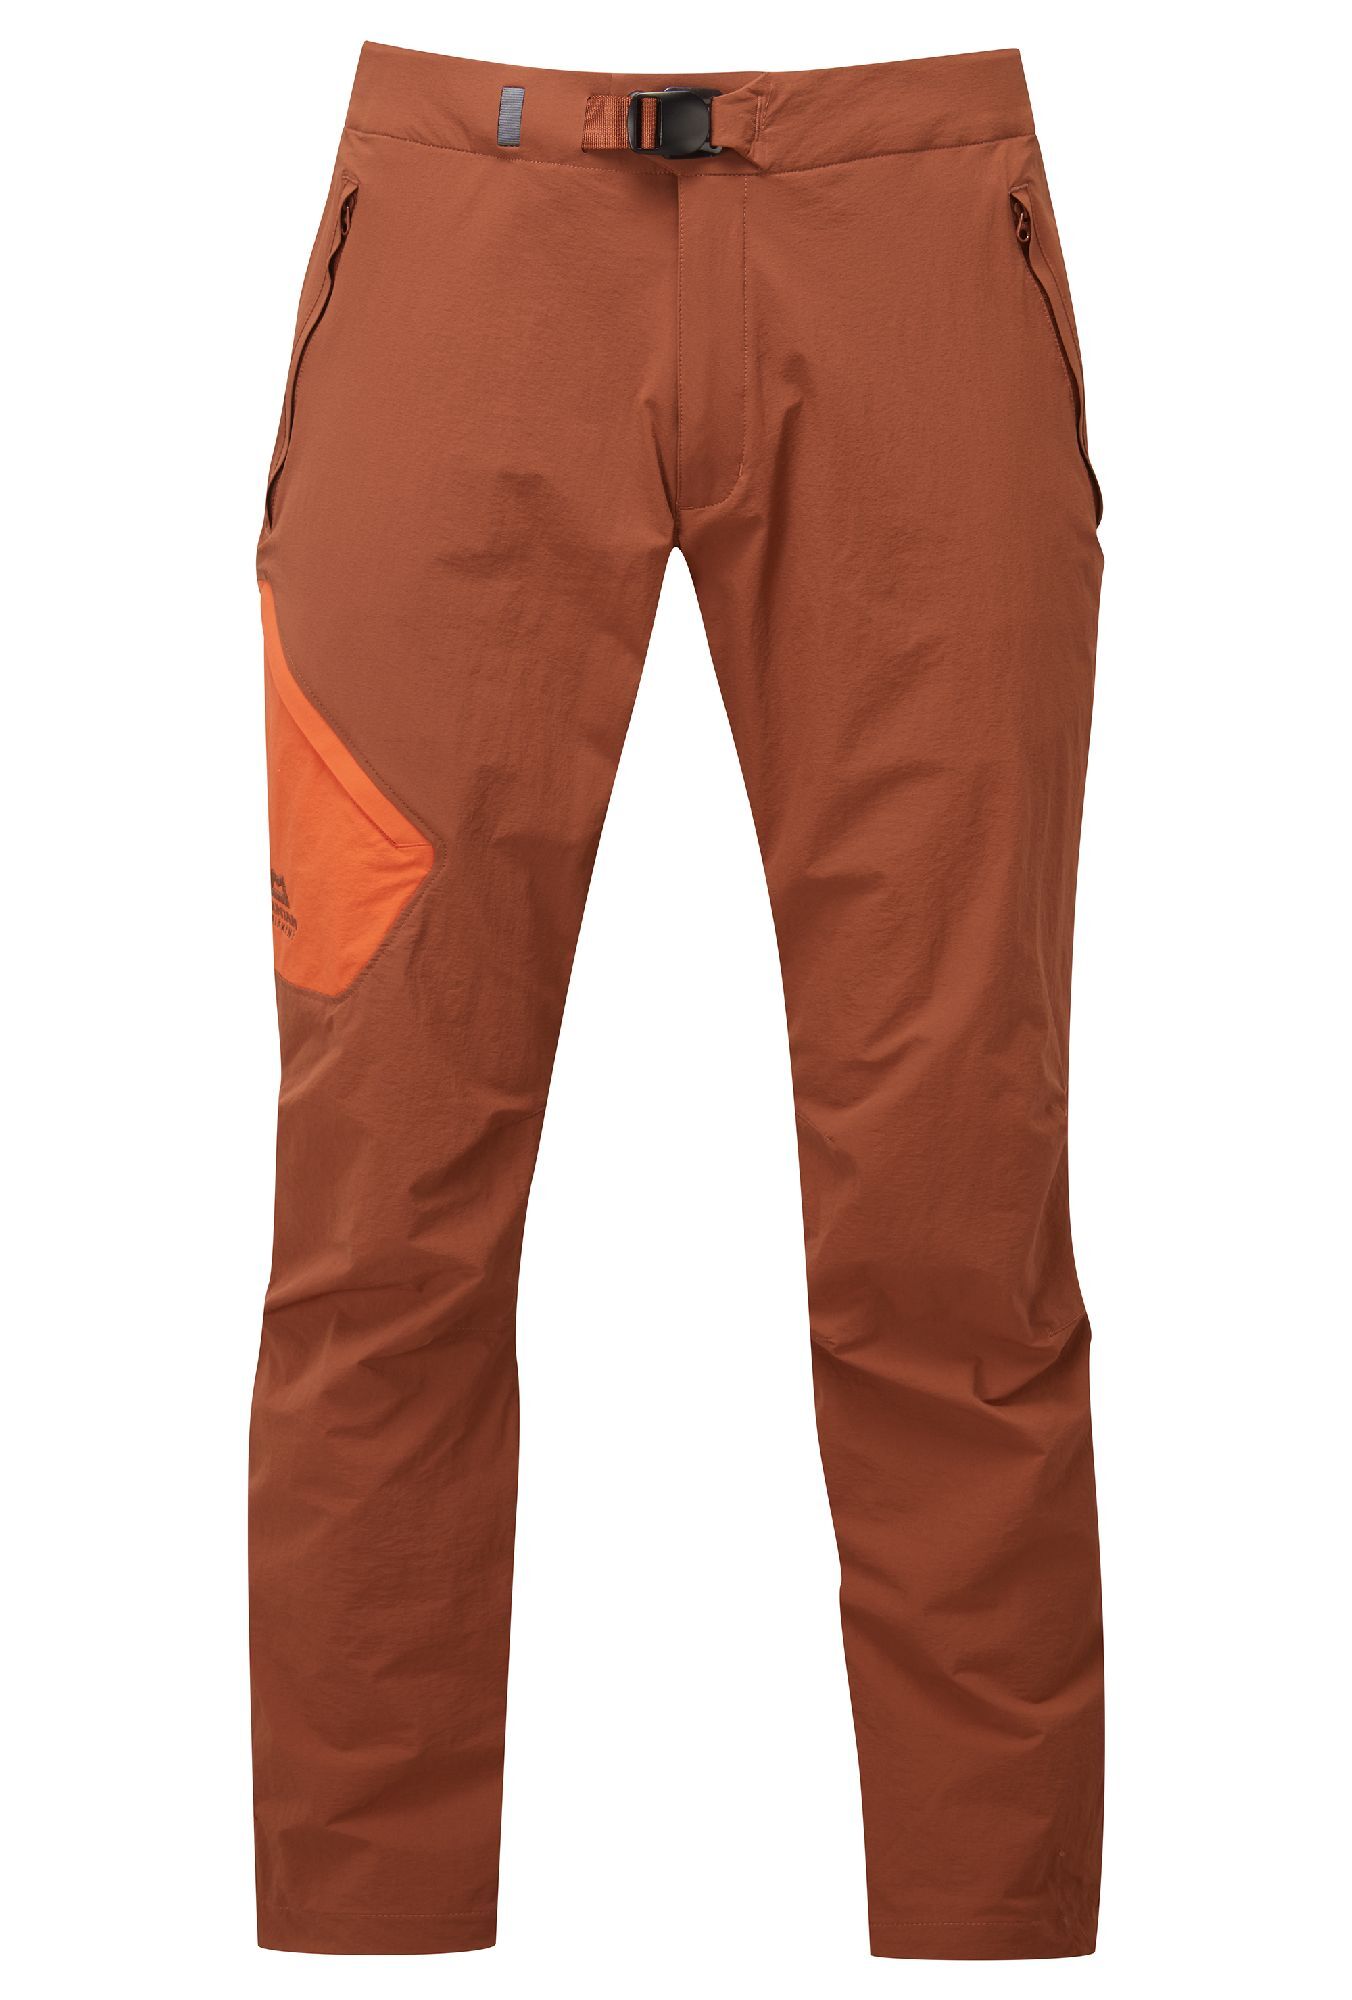 Mountain Equipment Comici 2 Pant - Pantalones de escalada - Hombre | Hardloop